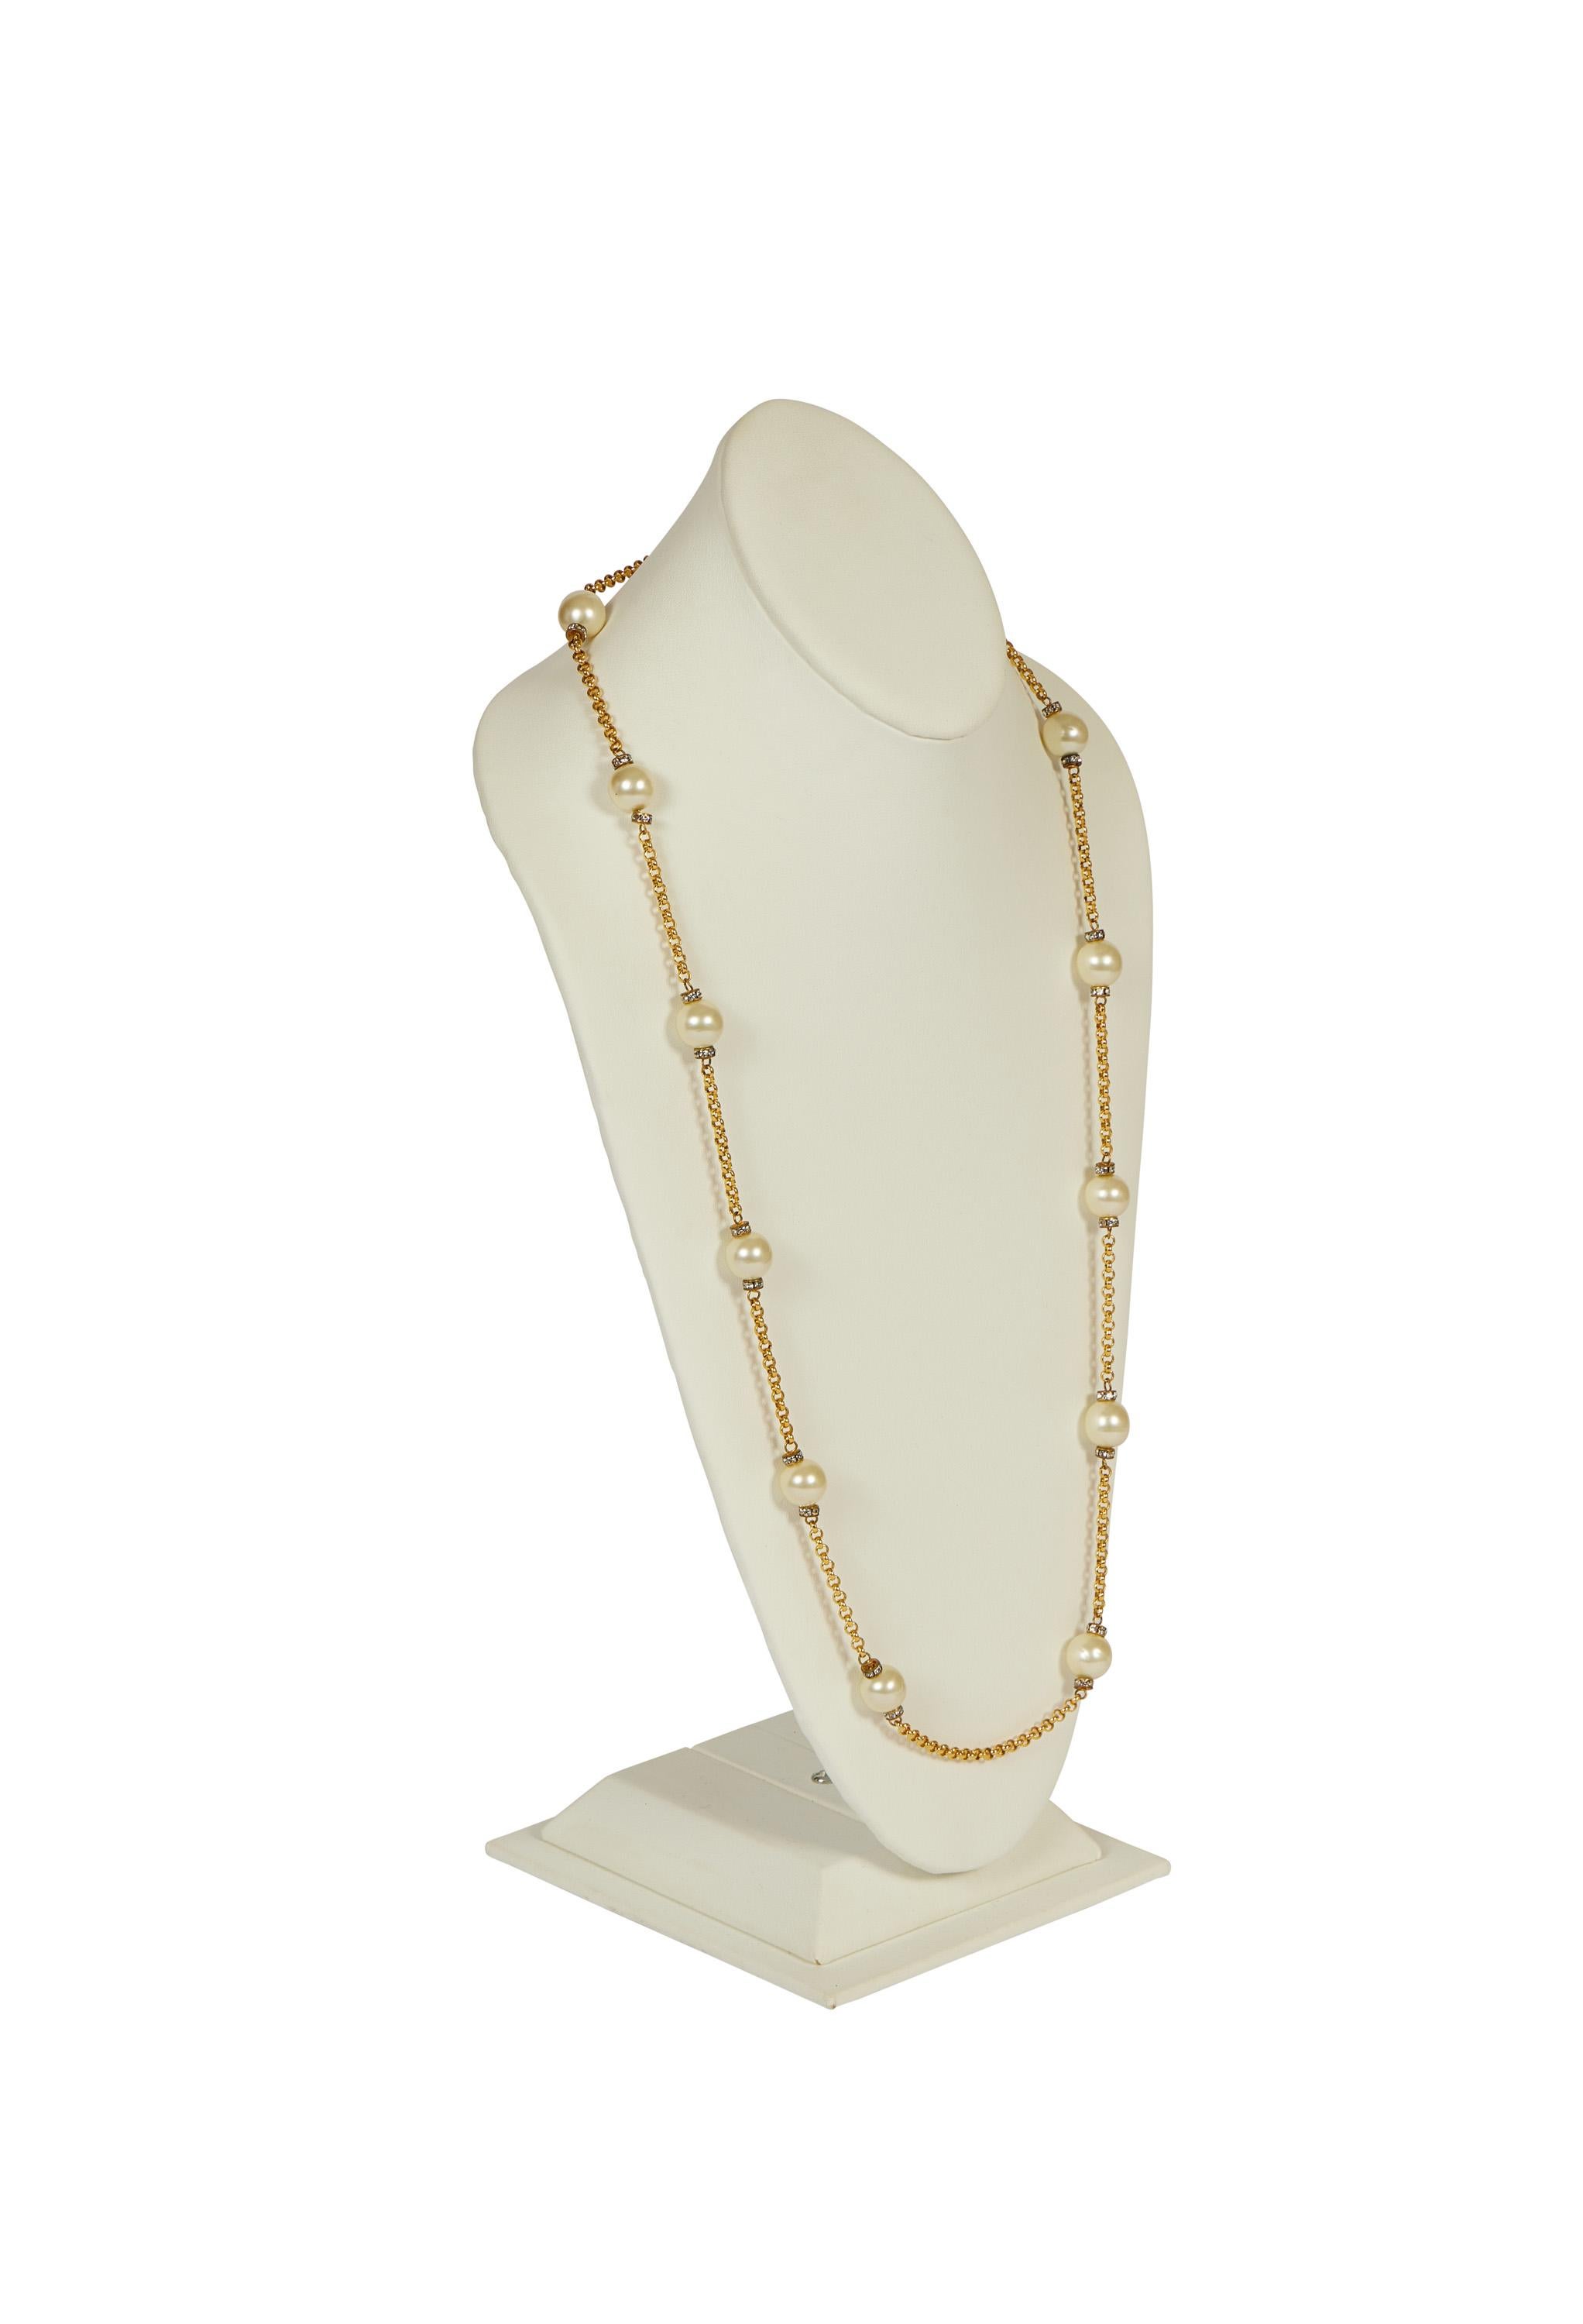 Chanel 80er Jahre lange Sautoir-Halskette. Die Perlen und Kristalle sind in einem neuwertigen Zustand. Kann einzeln oder doppelt getragen werden. Kommt mit Original-Etui oder Box.